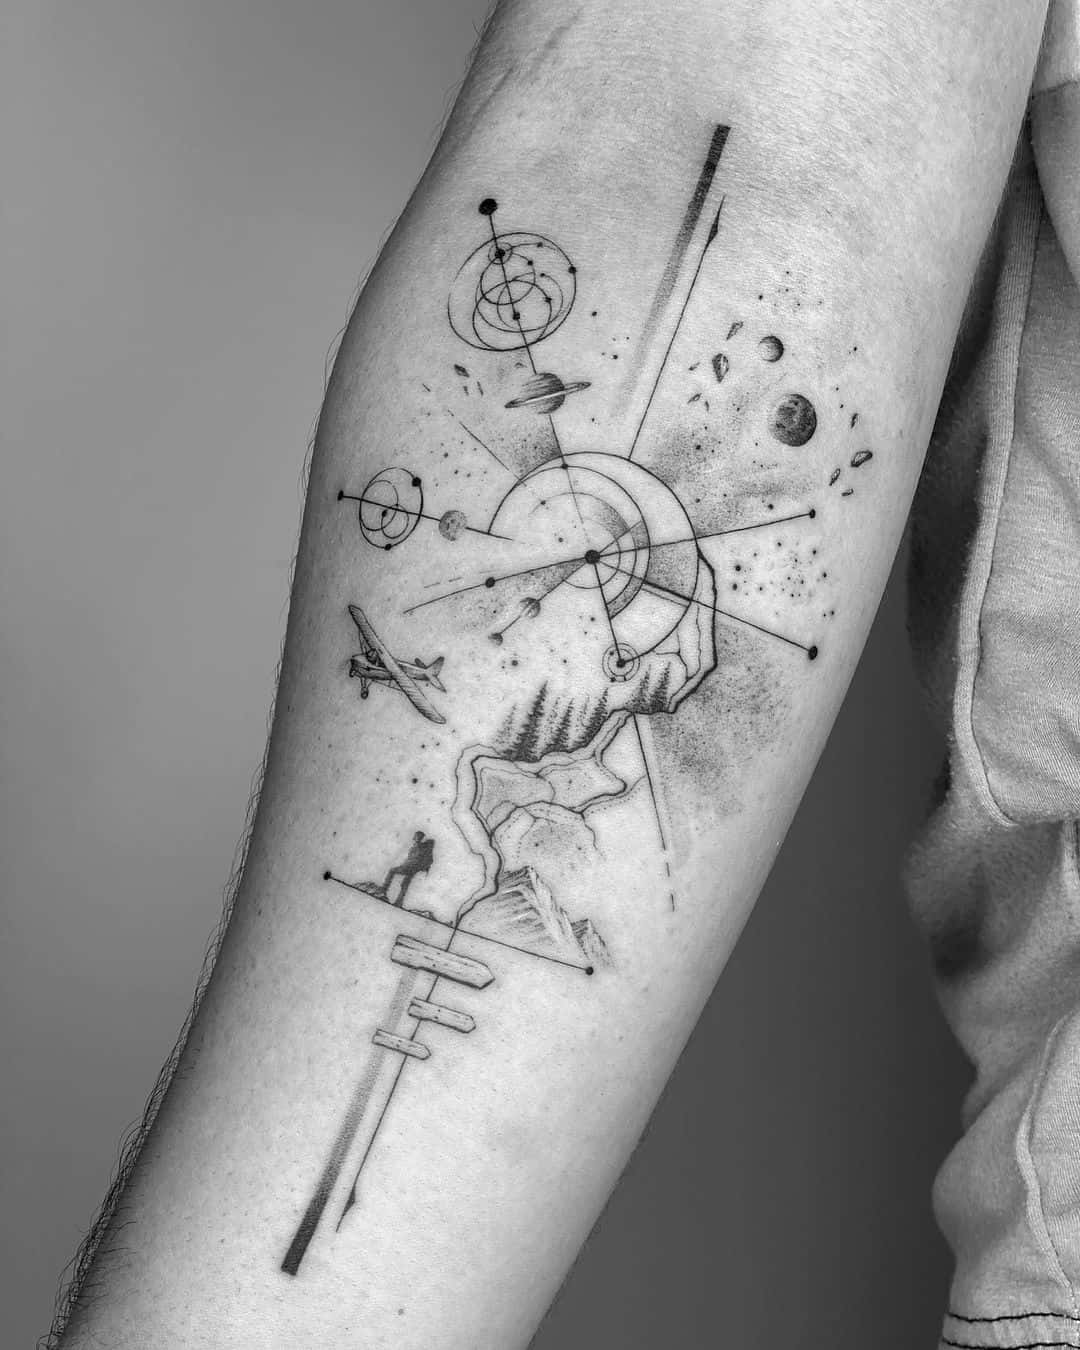 Unique geometric tattoo by judz.ttt